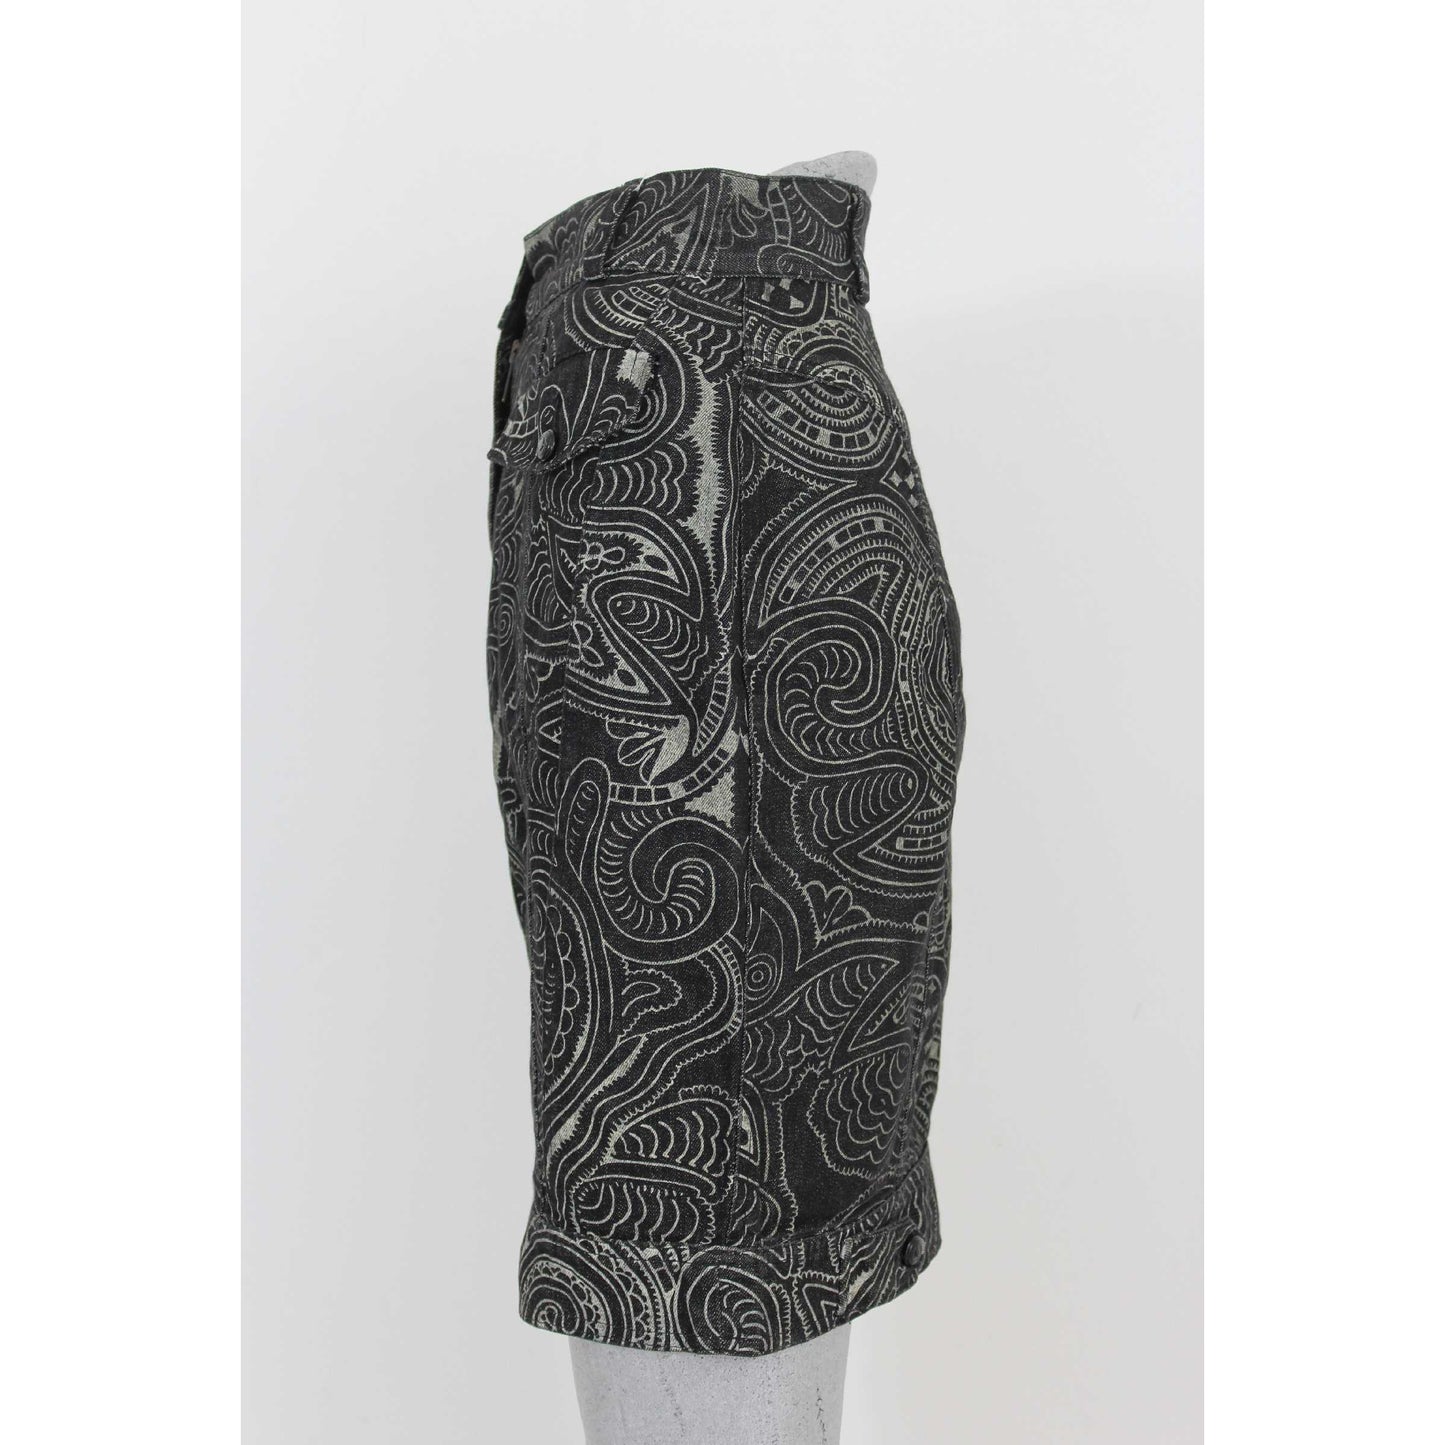 Moschino Denim Skirt Short Floral Vintage Cotton Black